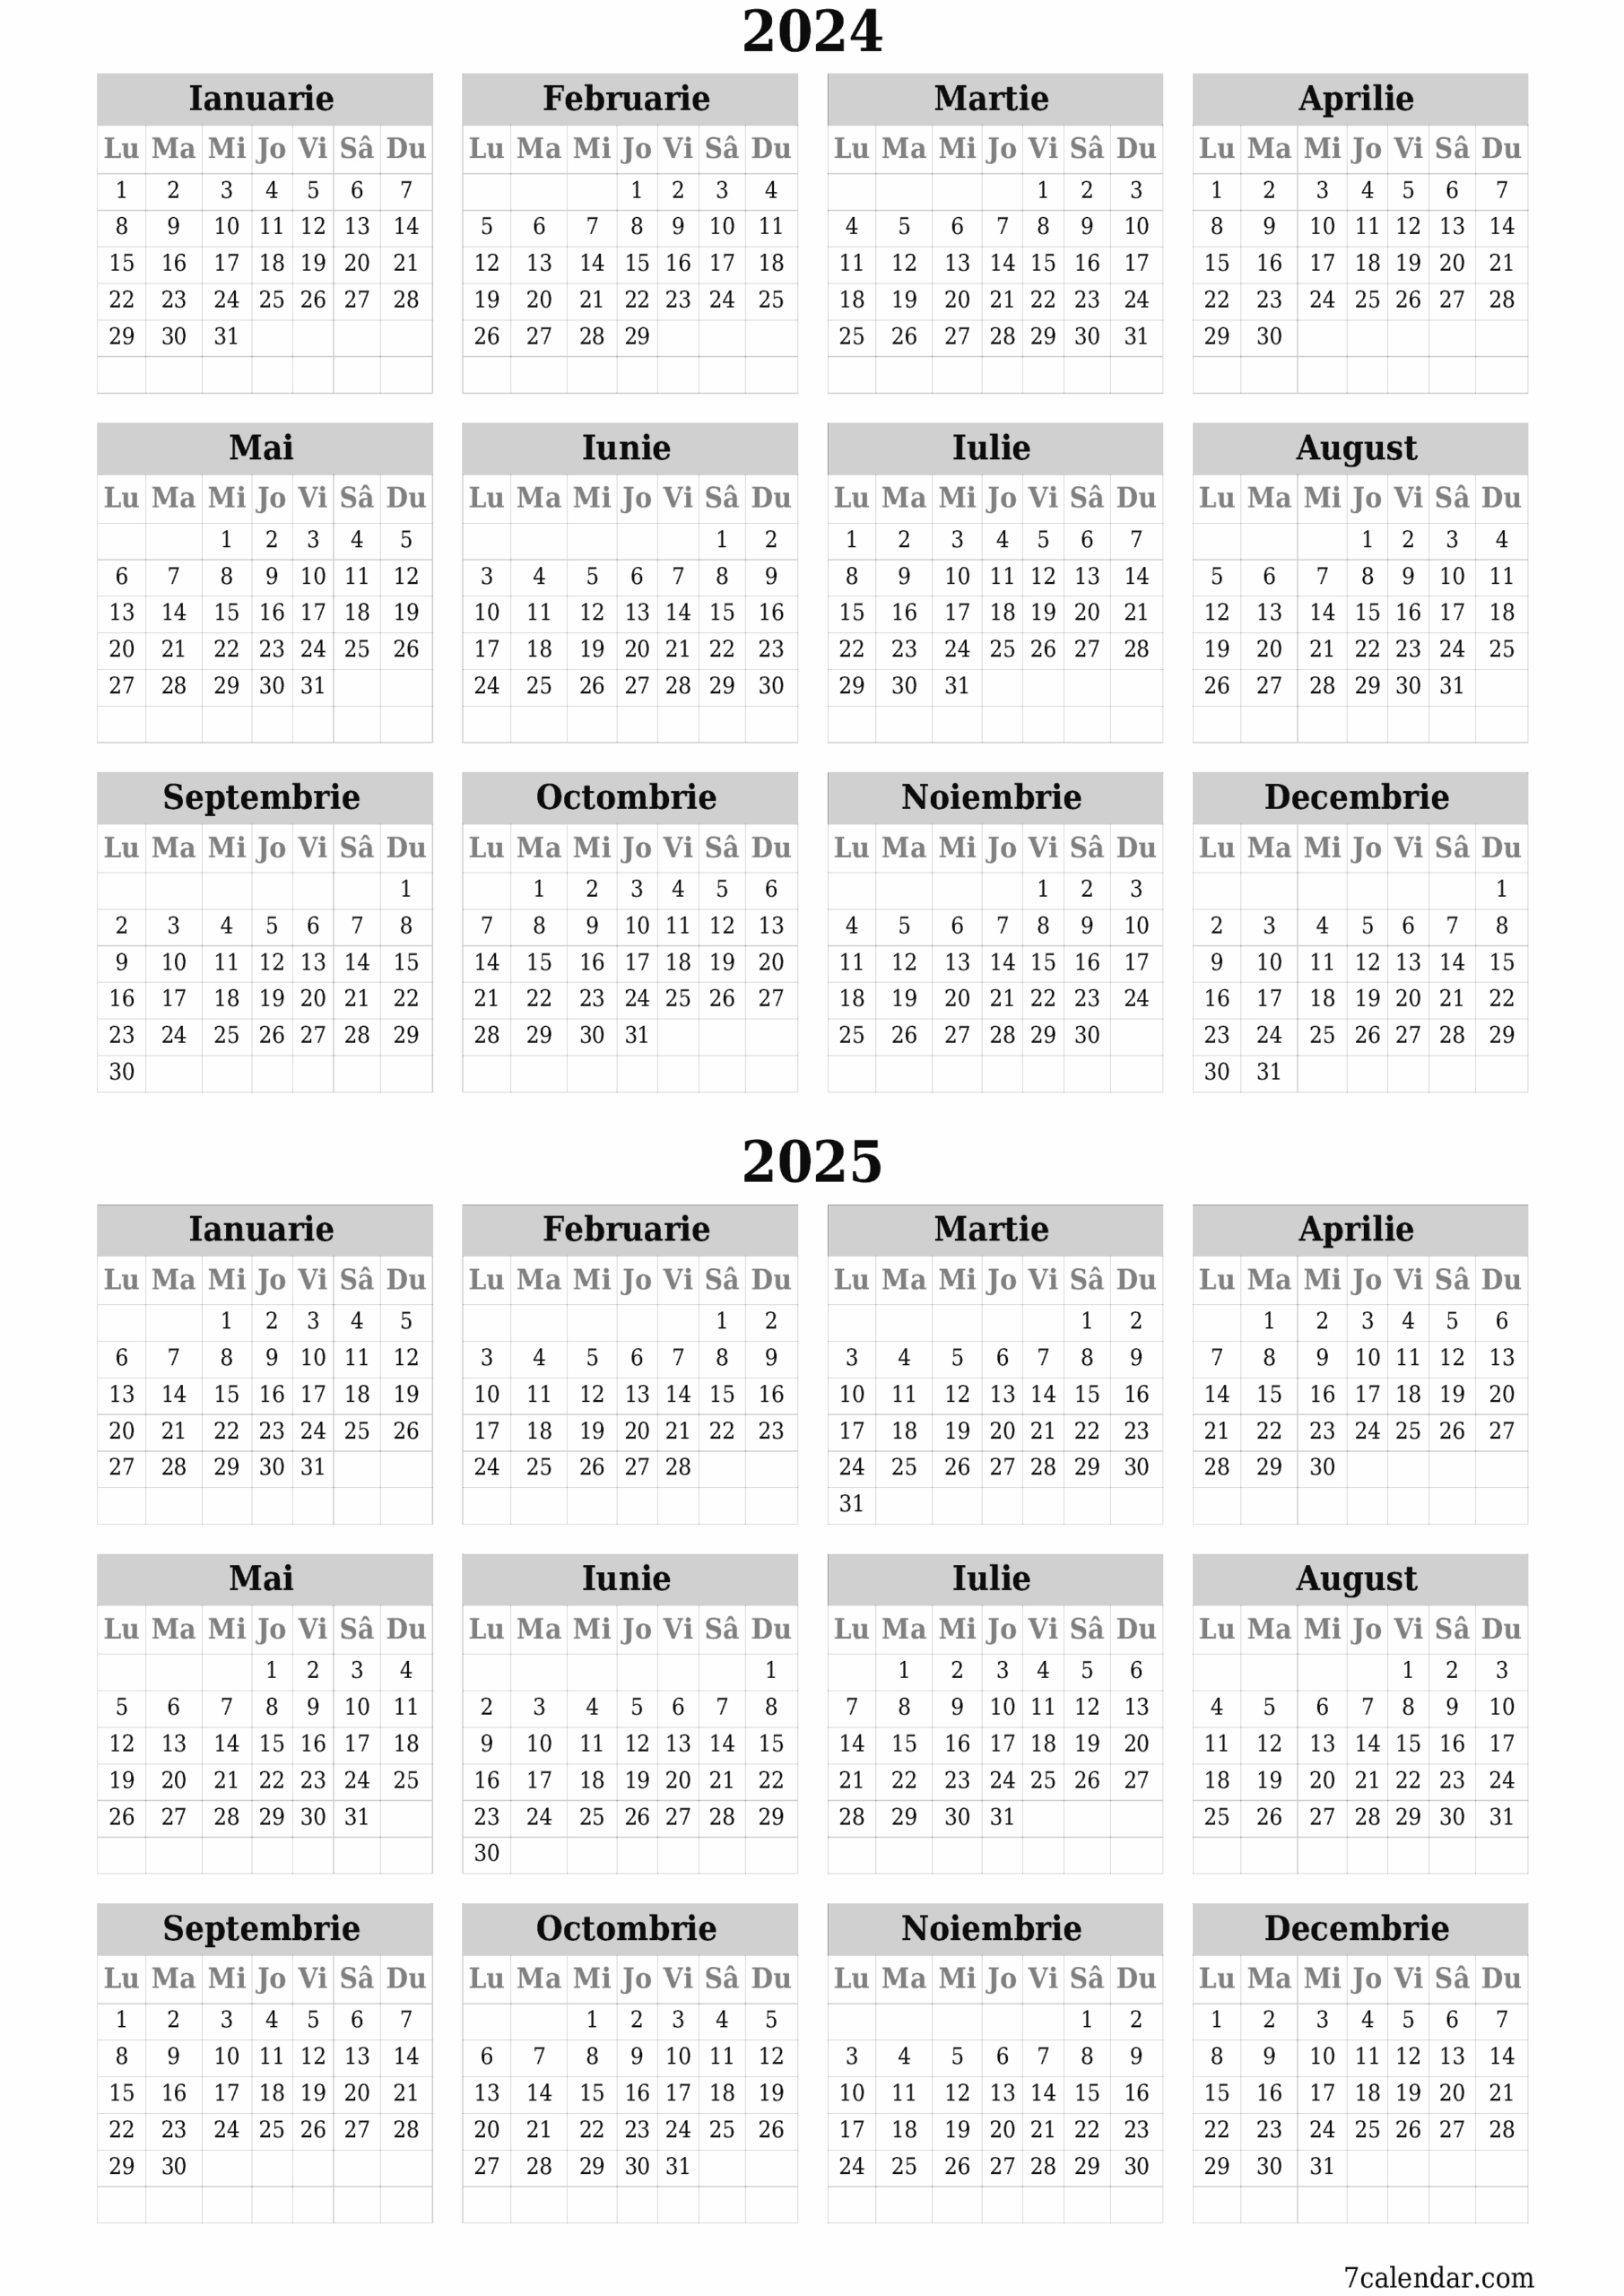 Calendare Și Planificatori De Imprimat Pentru Anul 2024 A4, A3 În | Printable Calendar 2024 Romanesc Pdf